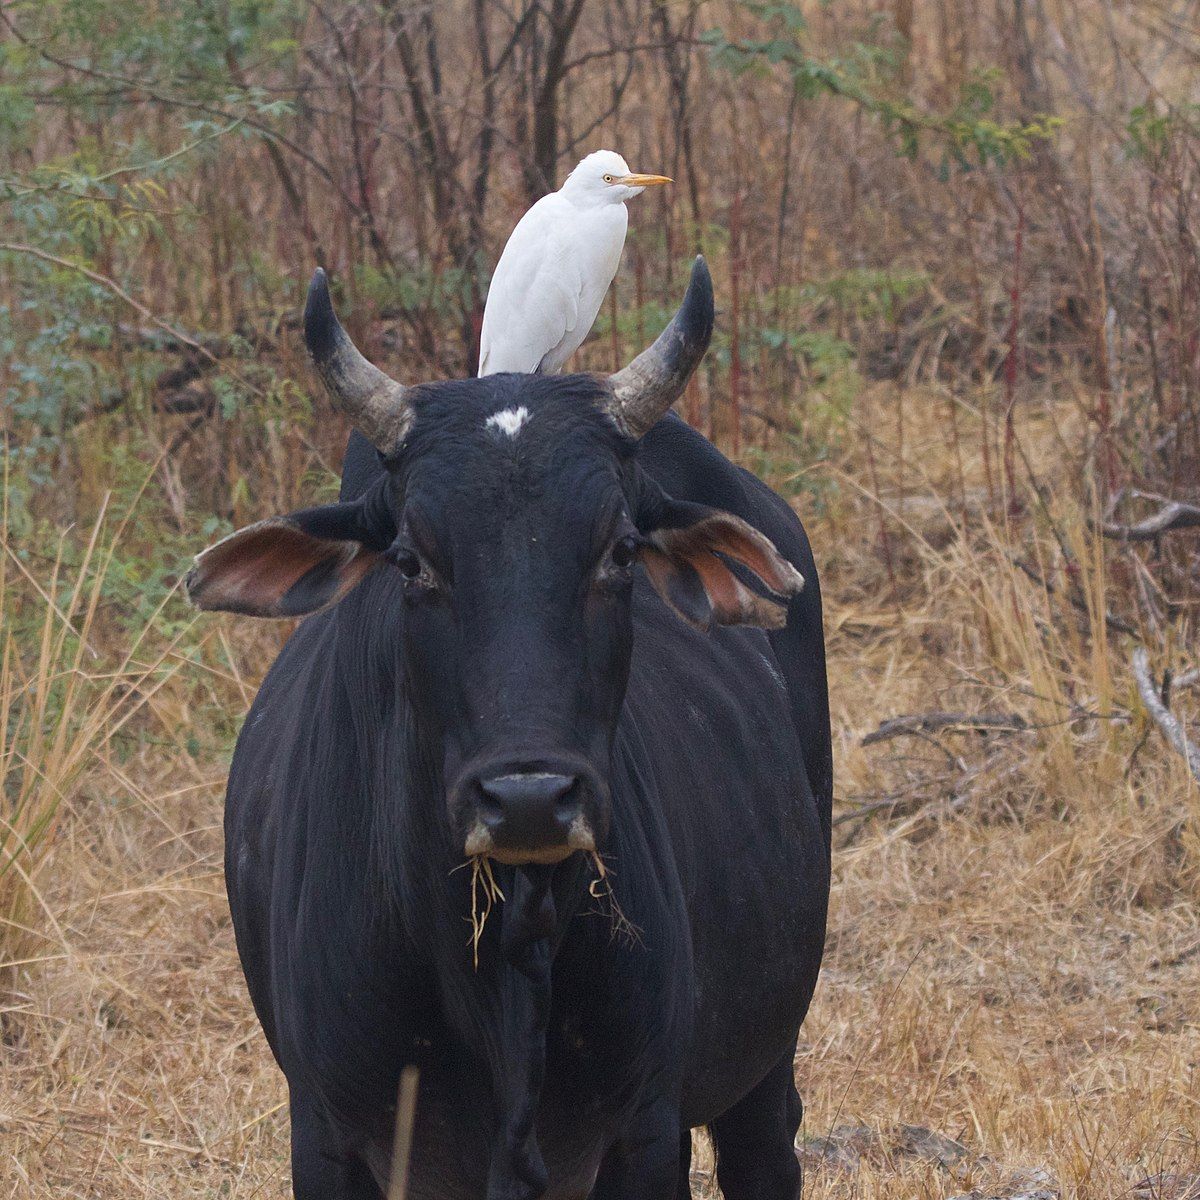 Cattle egret on cattle by Nagarjun, Wikimedia Commons